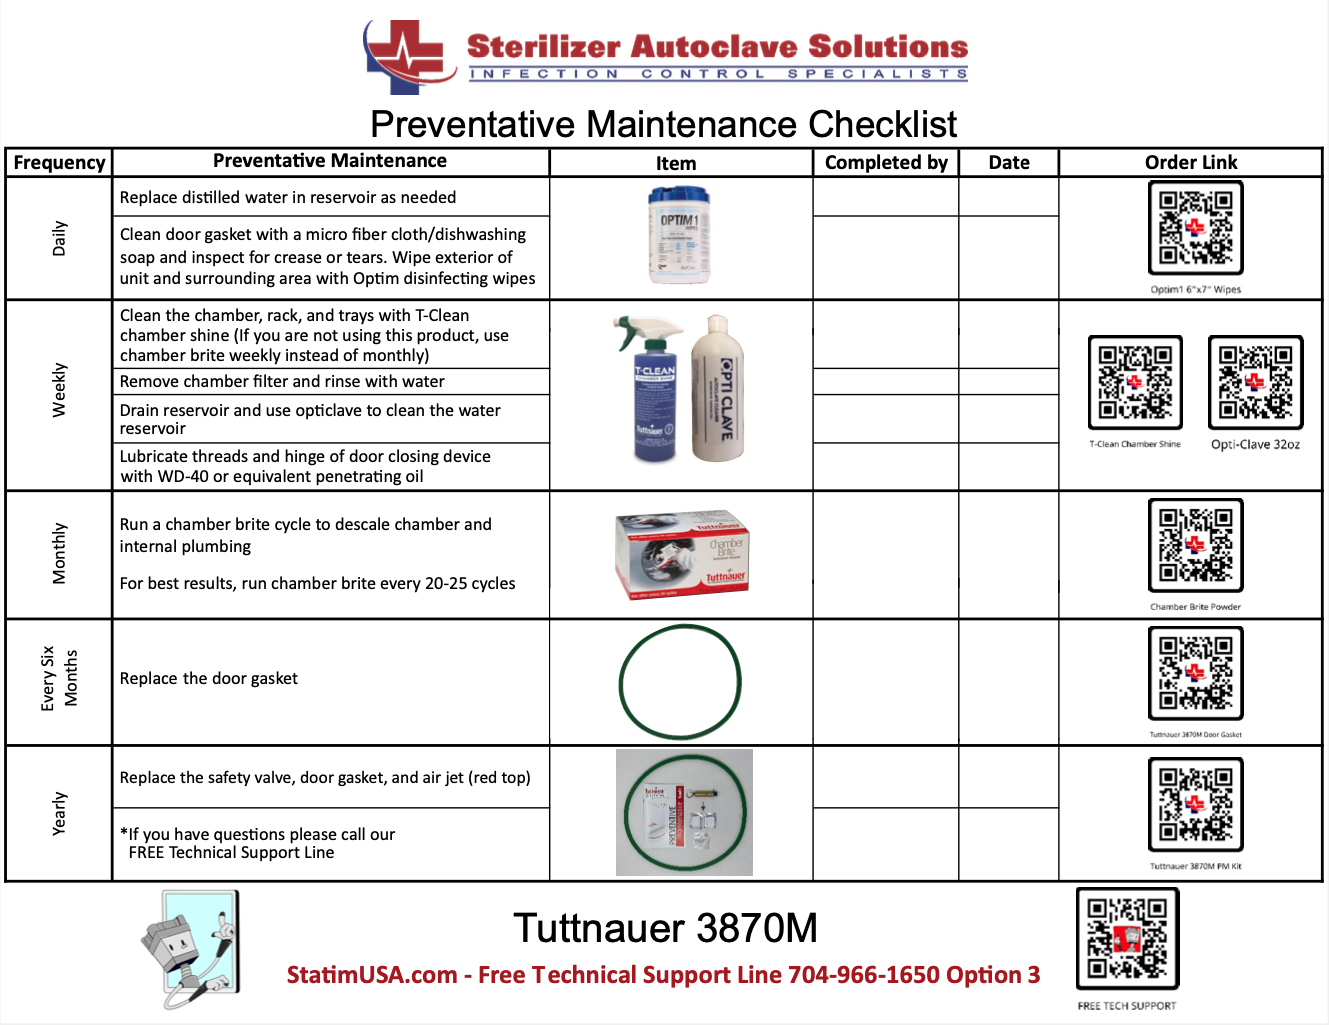 Tuttnauer 3870M PM Kit Checklist